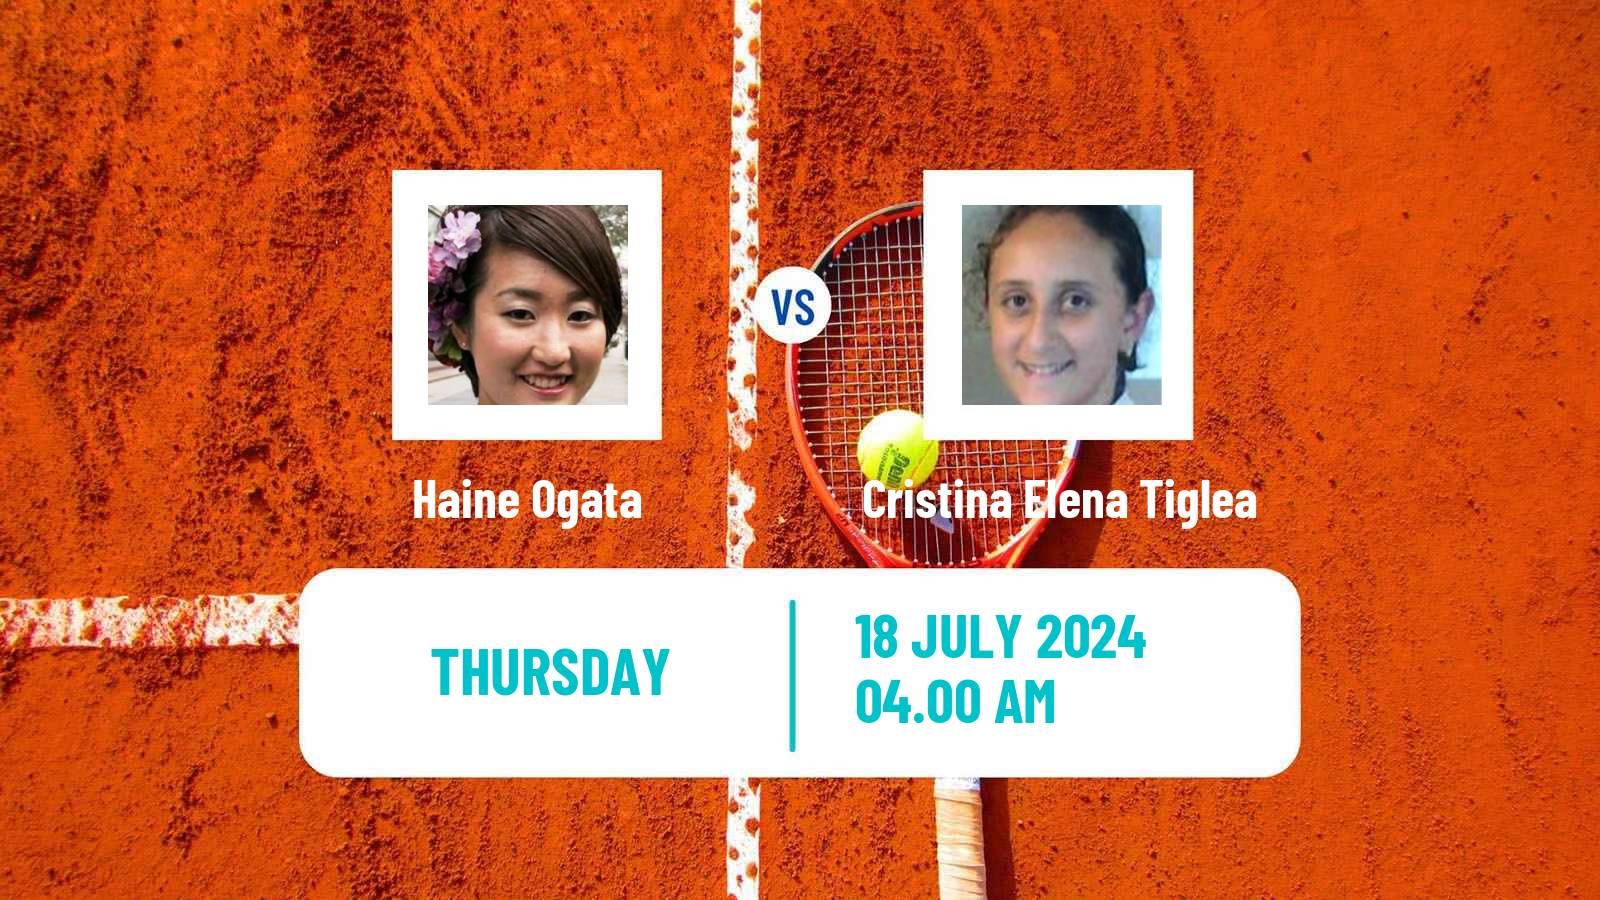 Tennis ITF W15 Monastir 27 Women Haine Ogata - Cristina Elena Tiglea